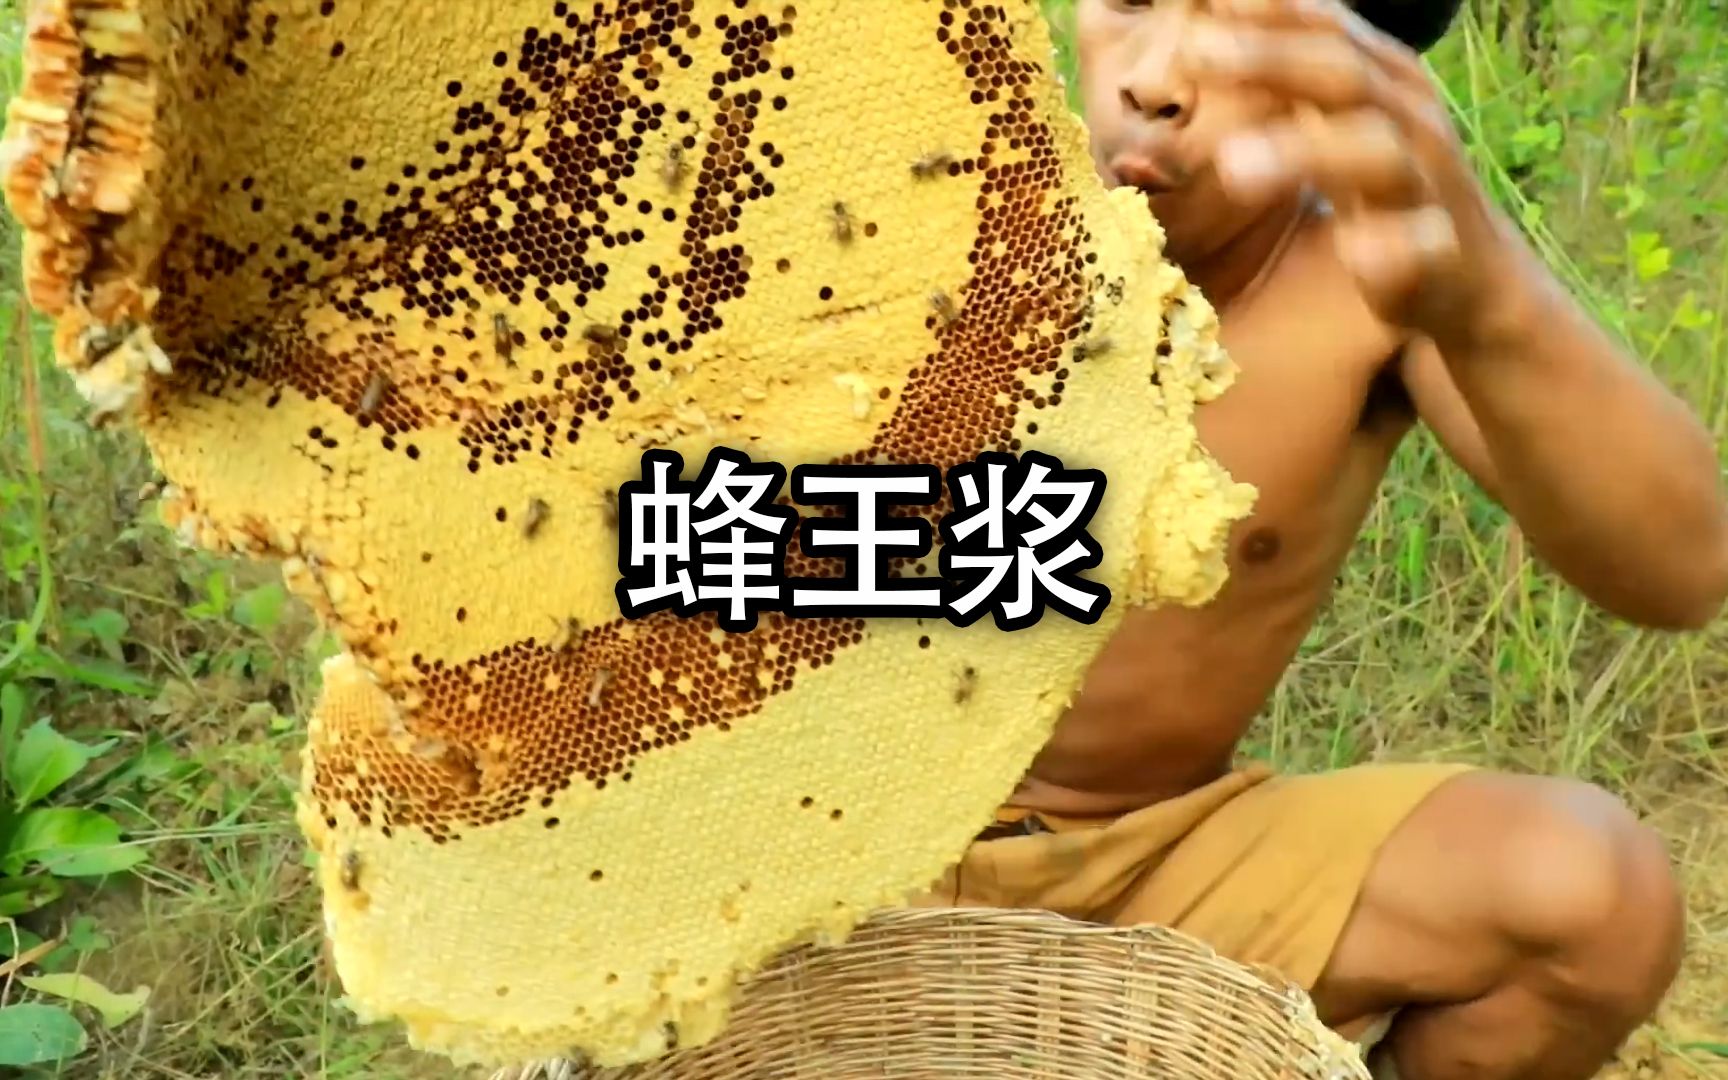 一次可以吃完几十斤的蜂王浆，你能做到吗